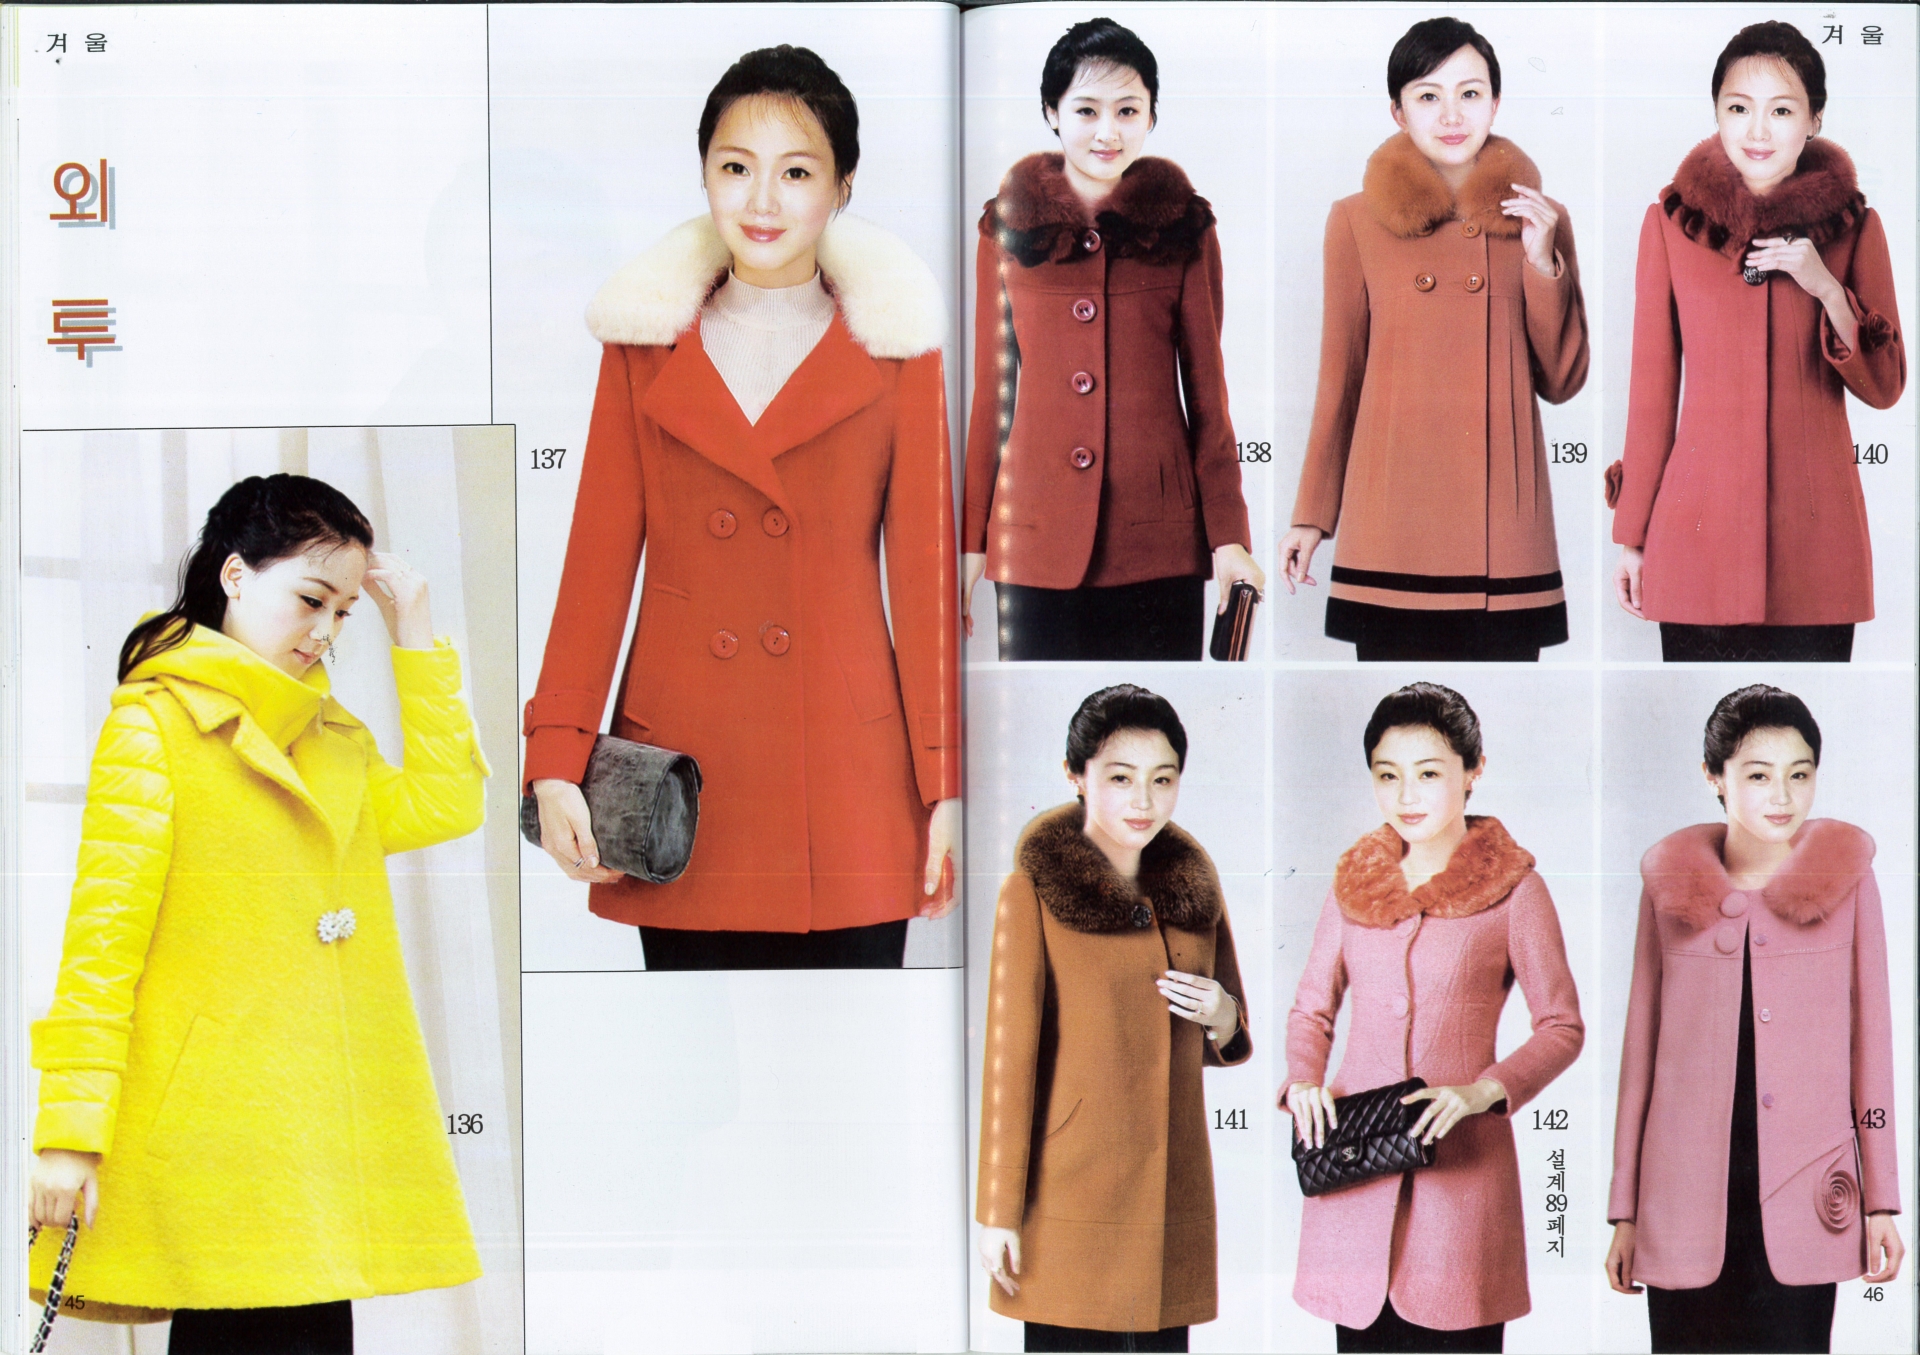 Phụ nữ Triều Tiên ăn mặc cực kỳ đơn giản. Mùa Đông - Xuân họ thường chọn áo suit, xách theo clutch hoặc túi xách đeo chéo nhỏ để tổng thể nhã nhặn hơn